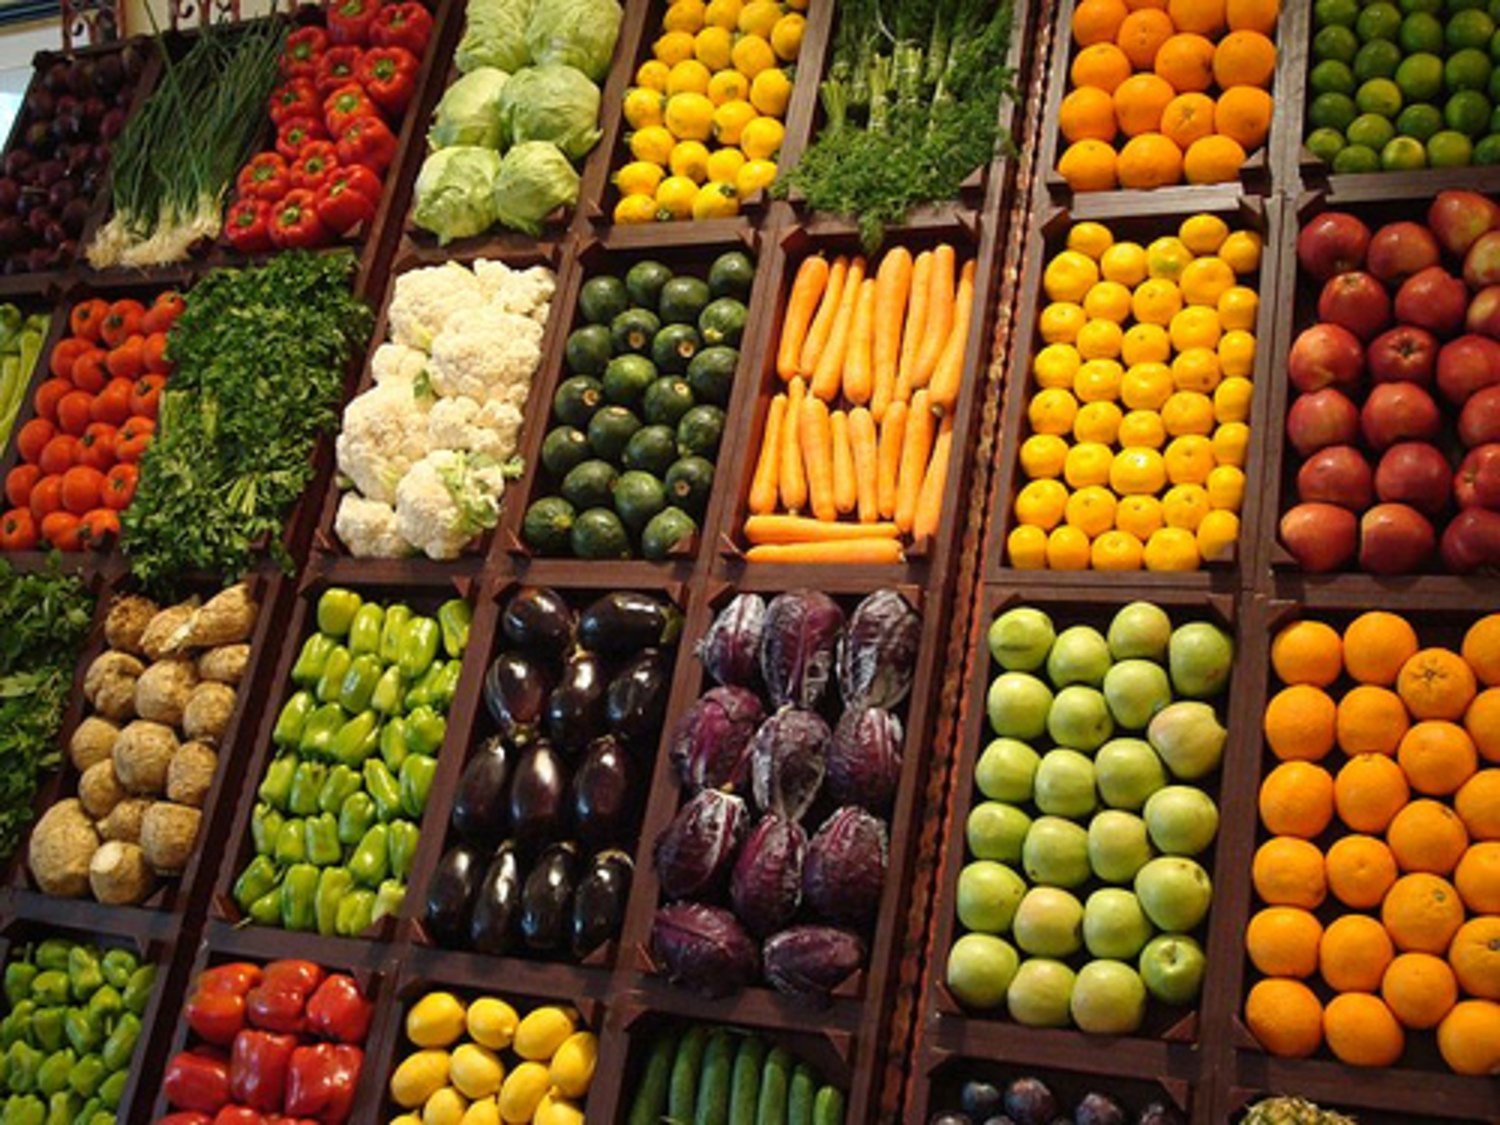 Кашам фруктам овощам. Прилавок с овощами и фруктами. Ассортимент фруктов и овощей. Витрина фрукты. Витрина овощи фрукты.